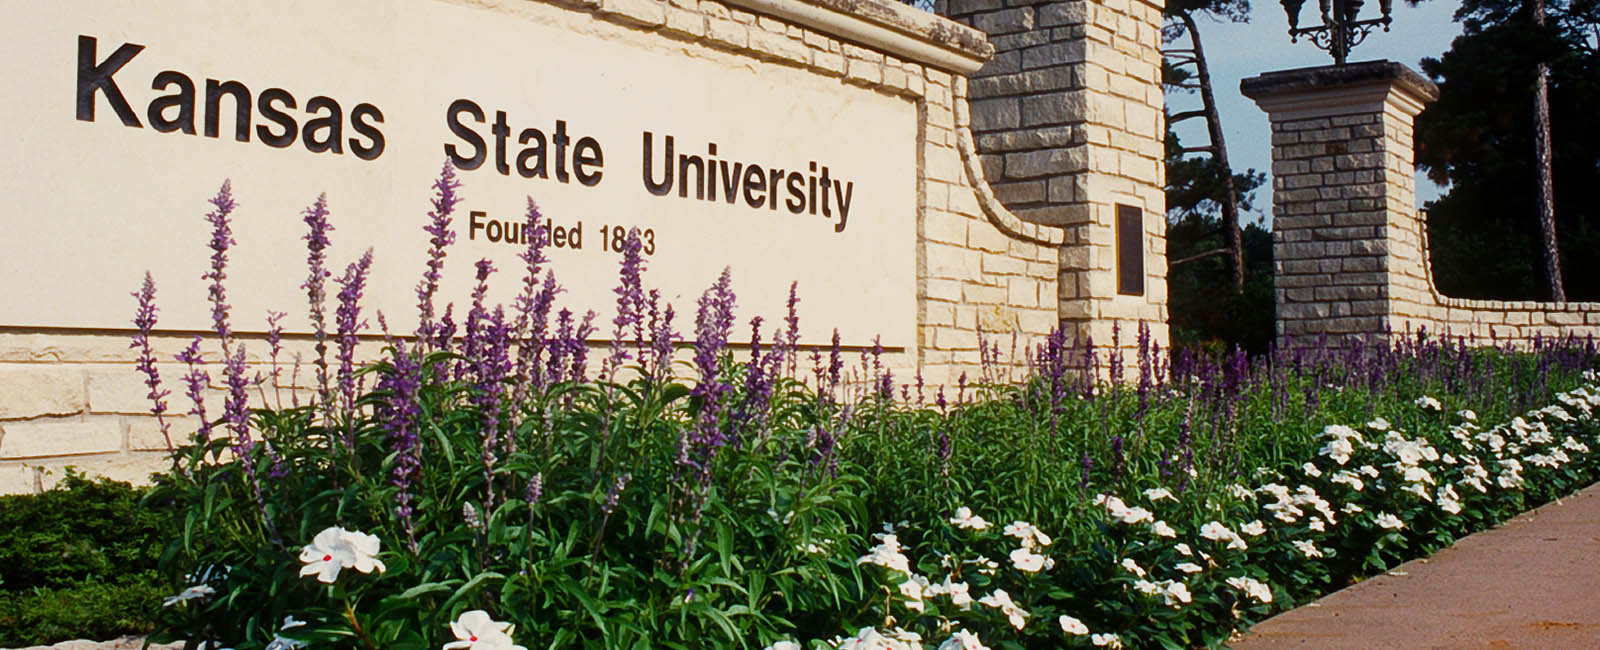 Kansas State University gate